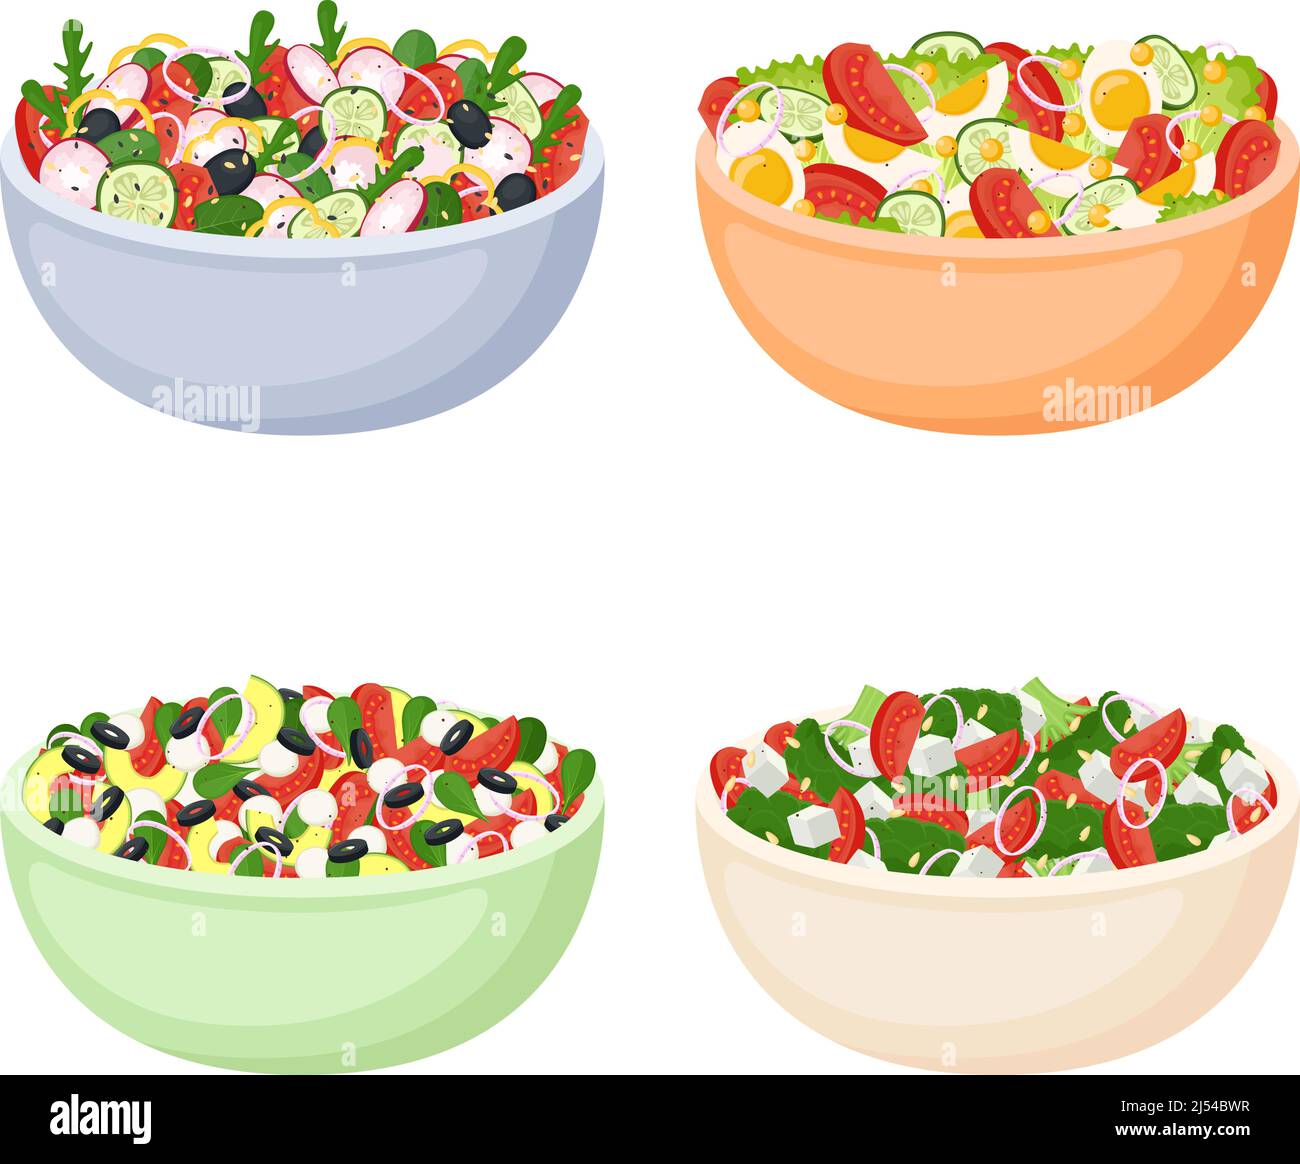 Ensemble de salades faites maison de légumes frais. Une alimentation saine. Repas Vagan et végétarien. Illustration vectorielle Illustration de Vecteur